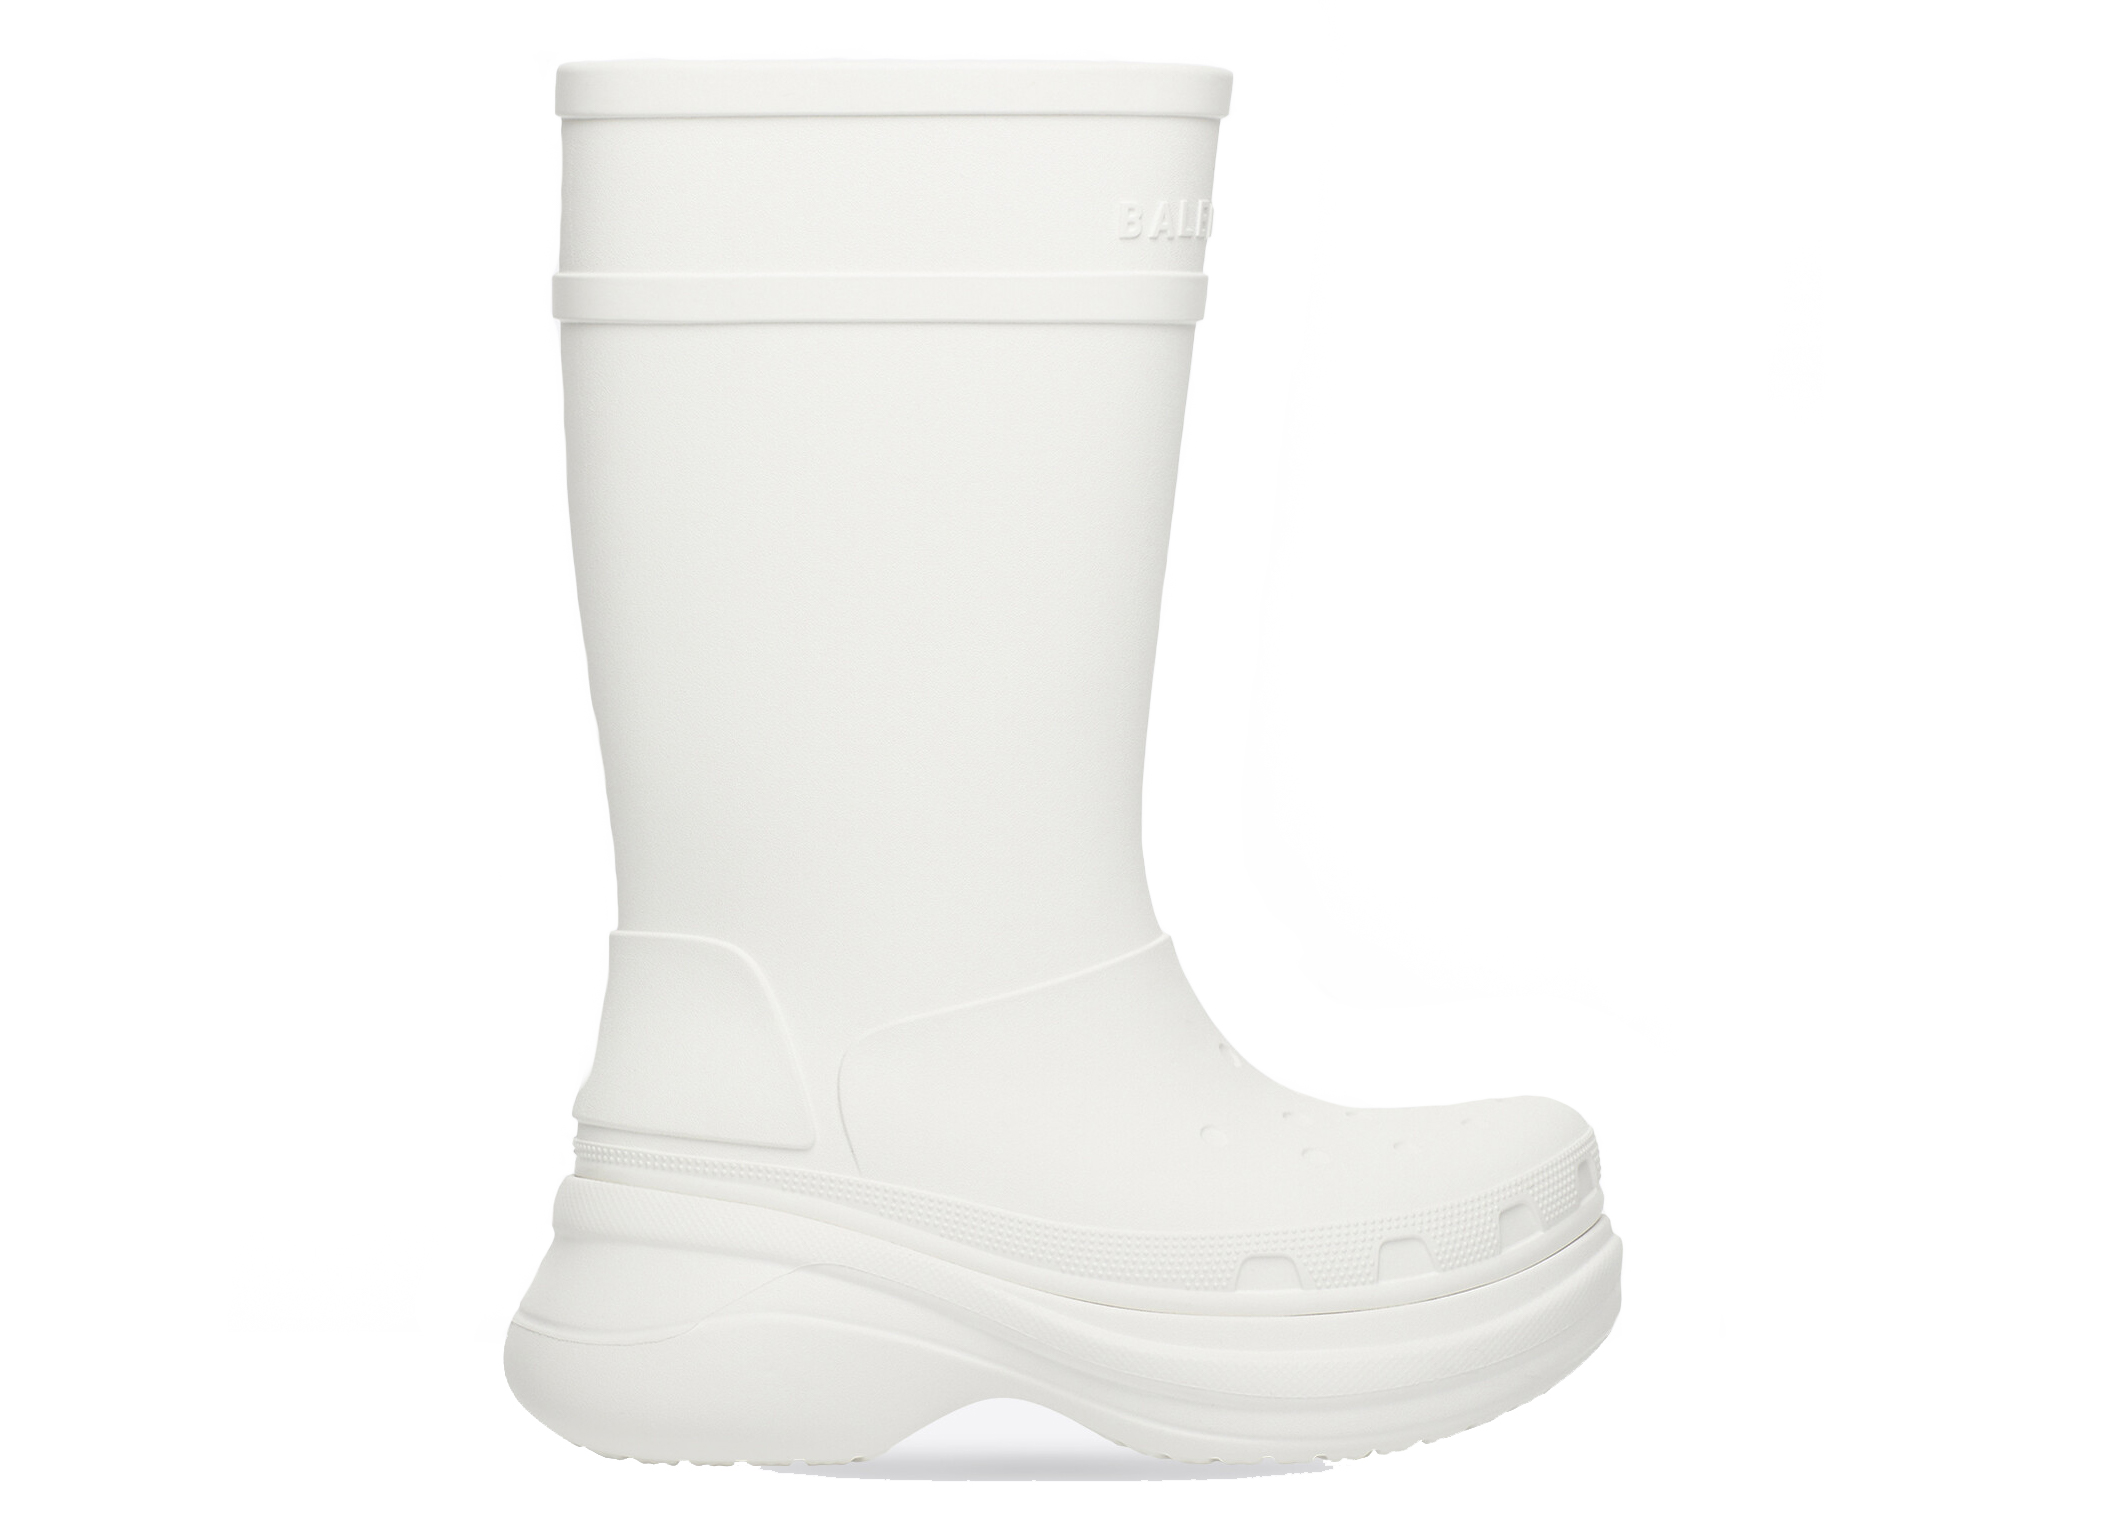 BALENCIAGA Crocs  rubber boots  White  Balenciaga boots 677388W1S8E  online on GIGLIOCOM